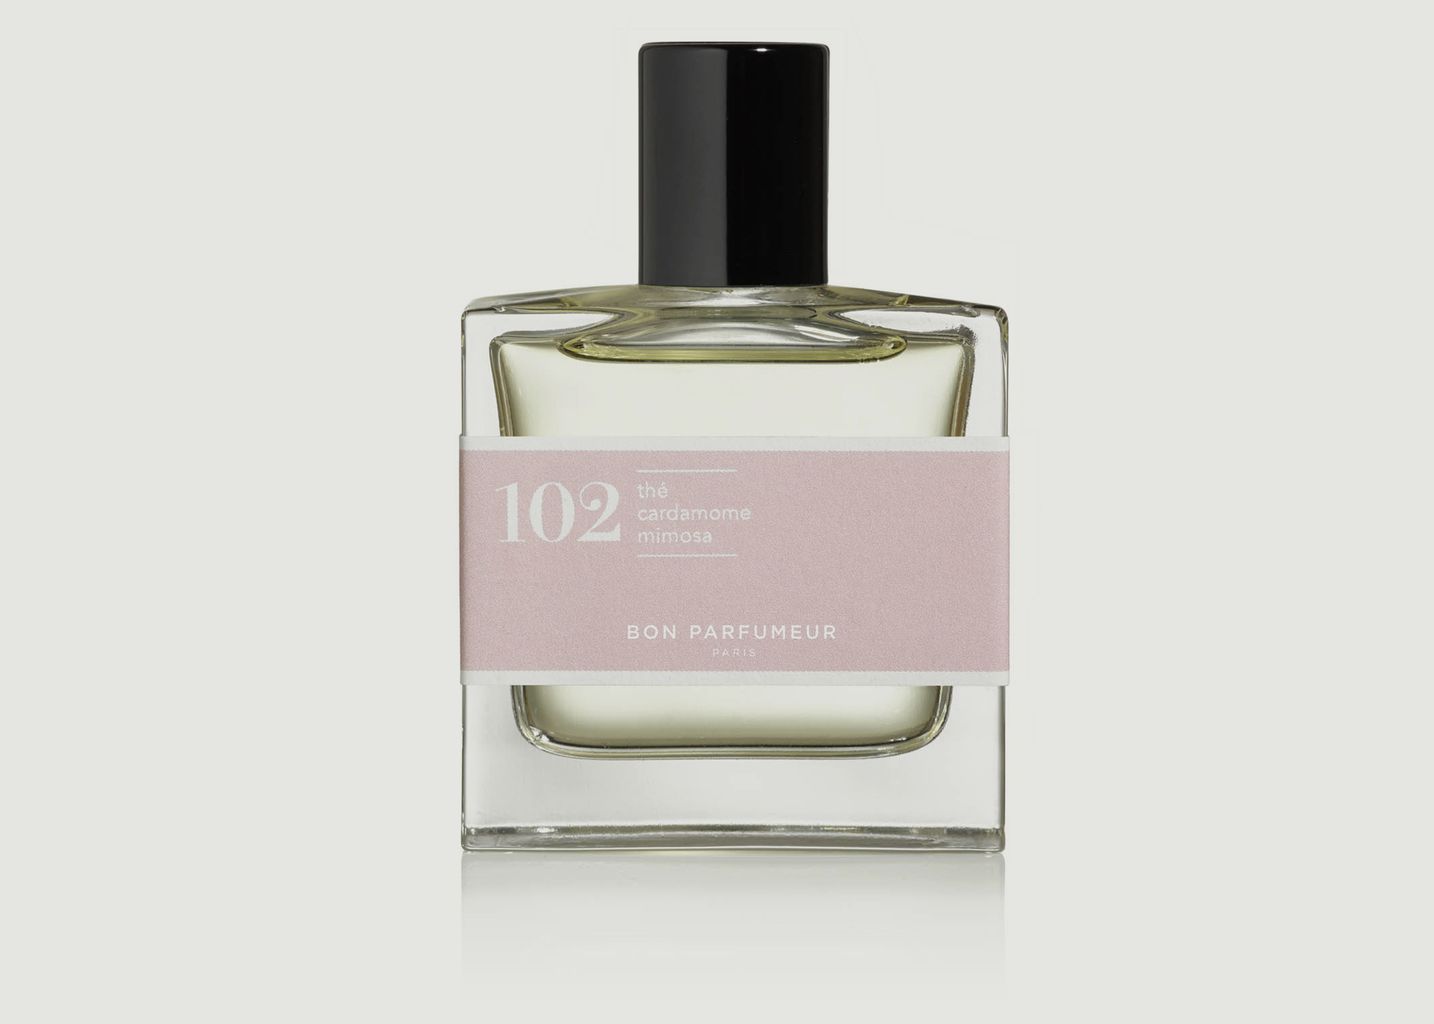 Eau de Parfum 102 Thé Cardamome Mimosa Floral - Bon Parfumeur